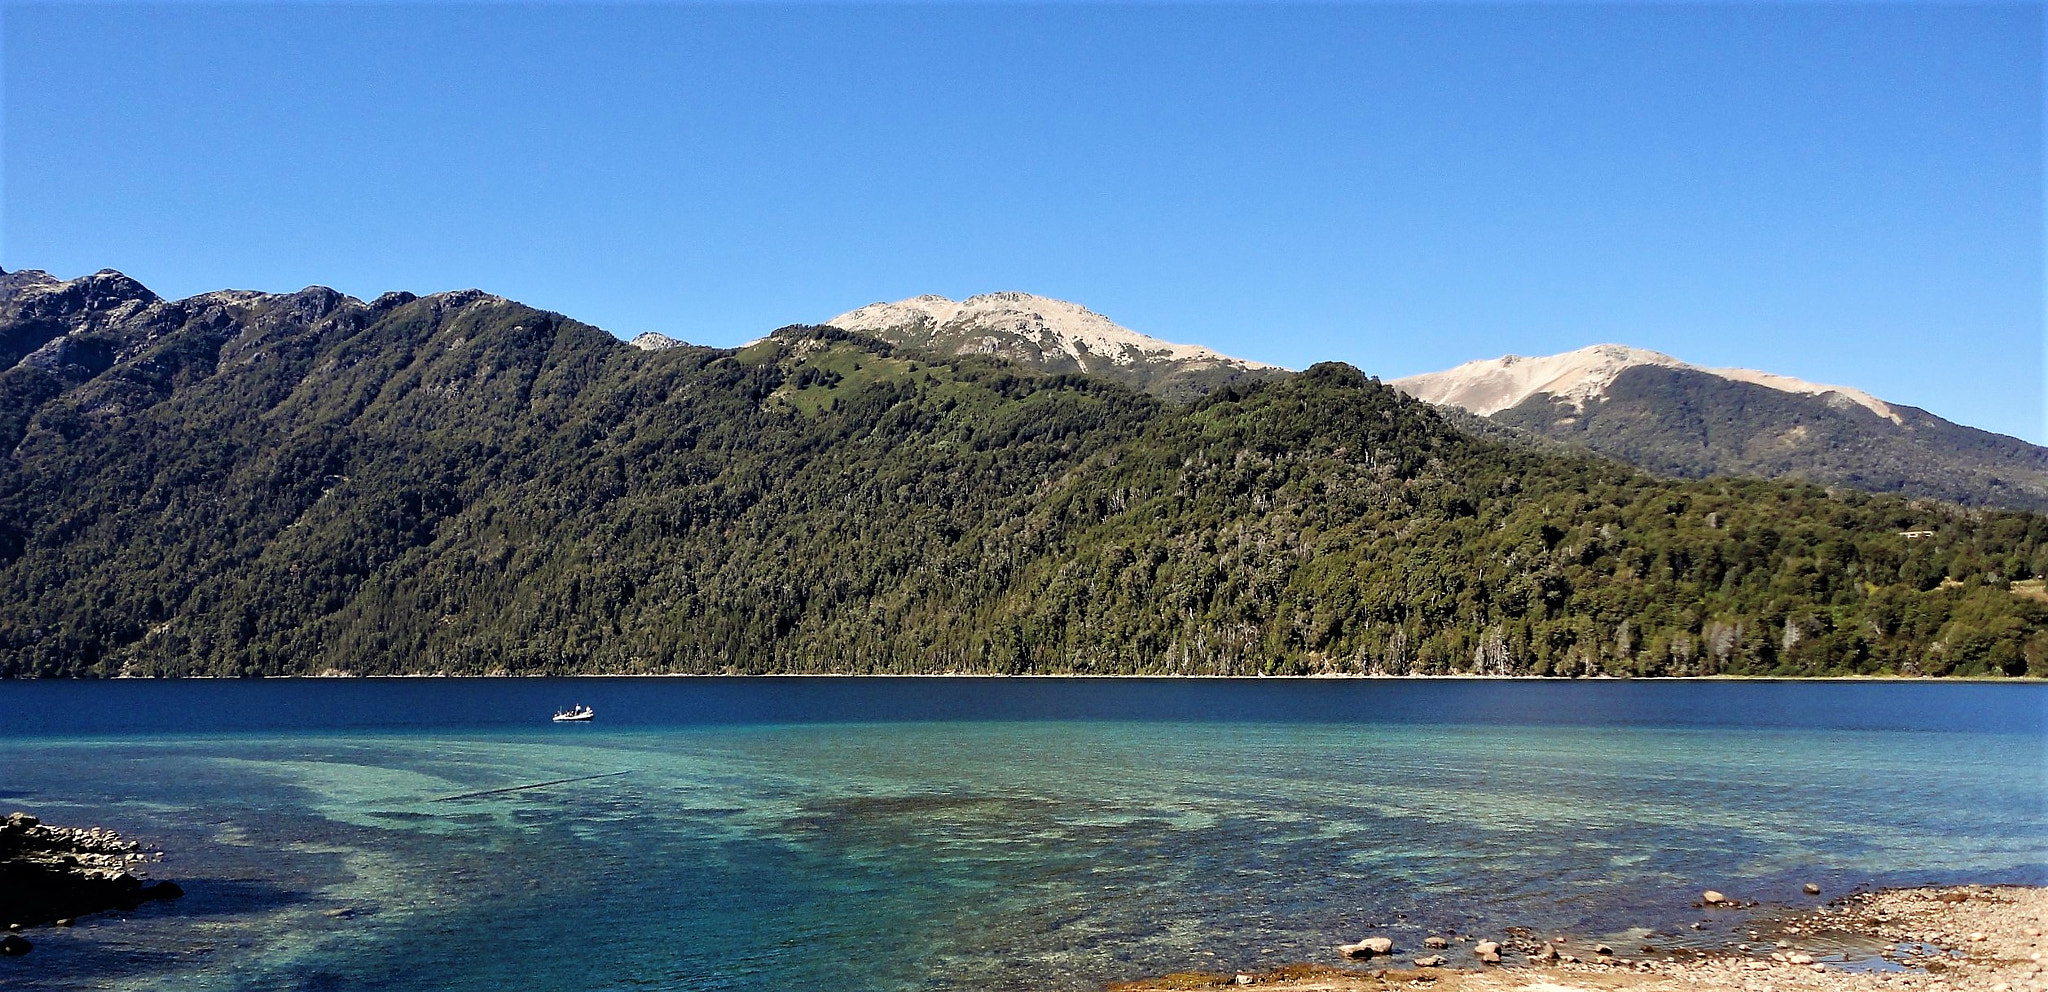 Sony Cyber-shot DSC-W350 sample photo. Lake correntoso,villa la angostura,neuquen,argenti photography